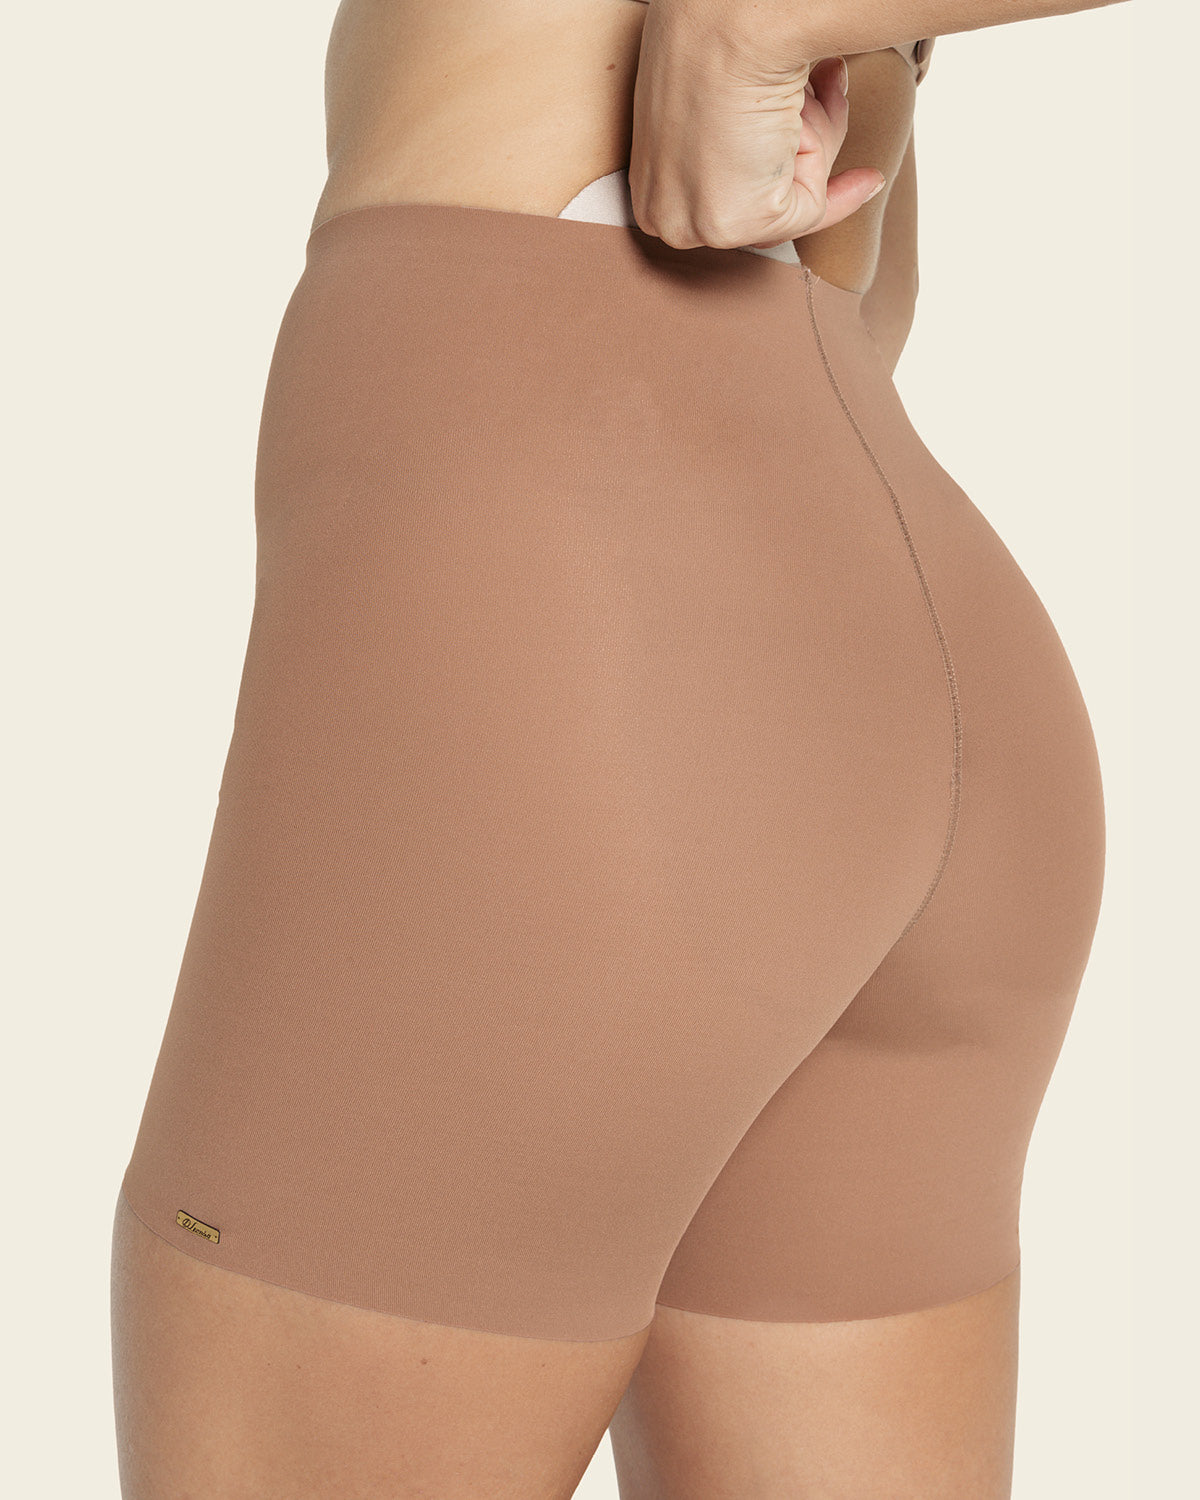 Women Lace Classic Daily Wear Body Shaper Butt Lifter Panties, Butt Shaper  Panty Booty Lifter Shapewear